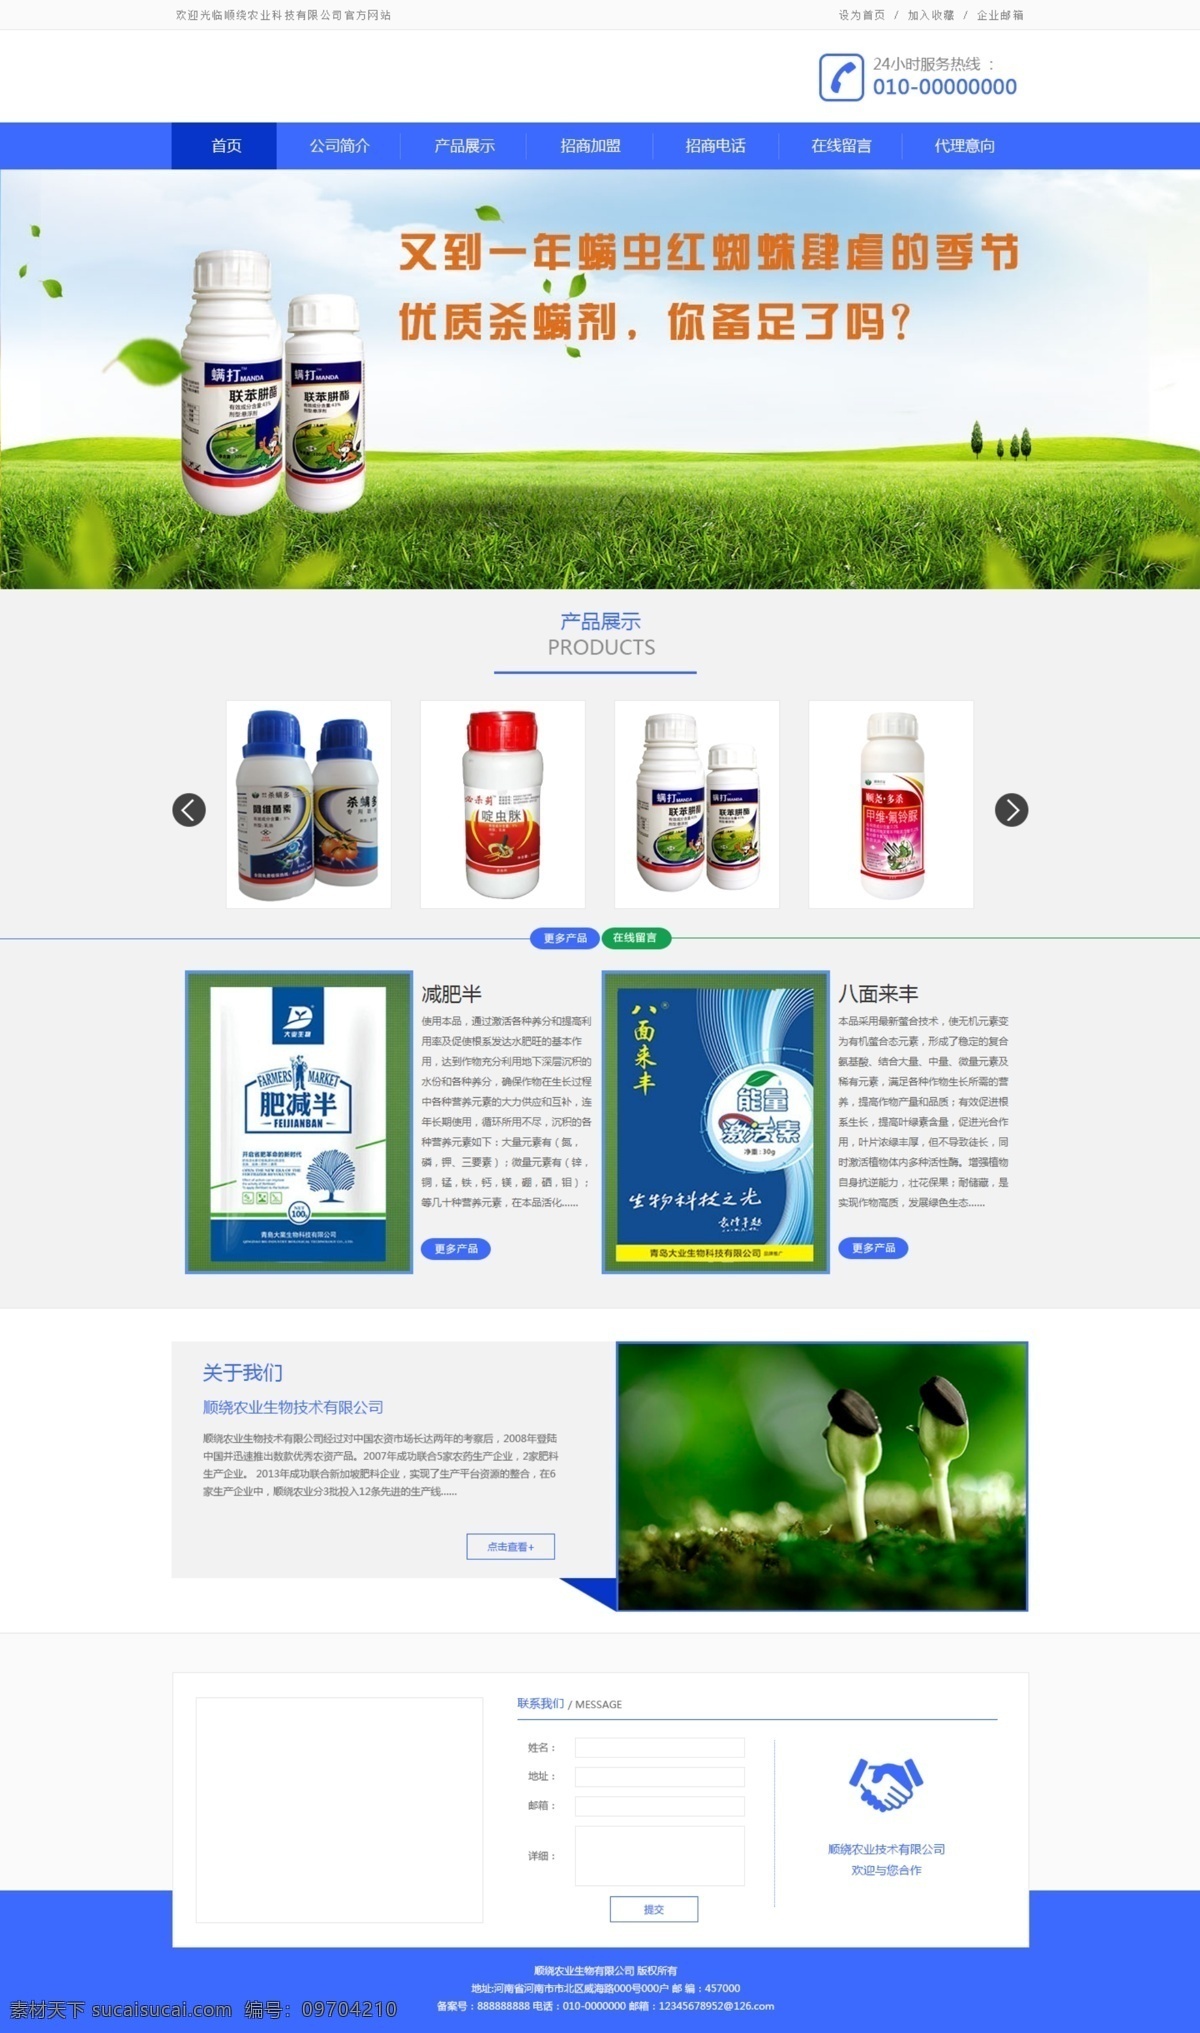 农业网 页 设计图 农业 网页 效果图 版面图 首页图 白色